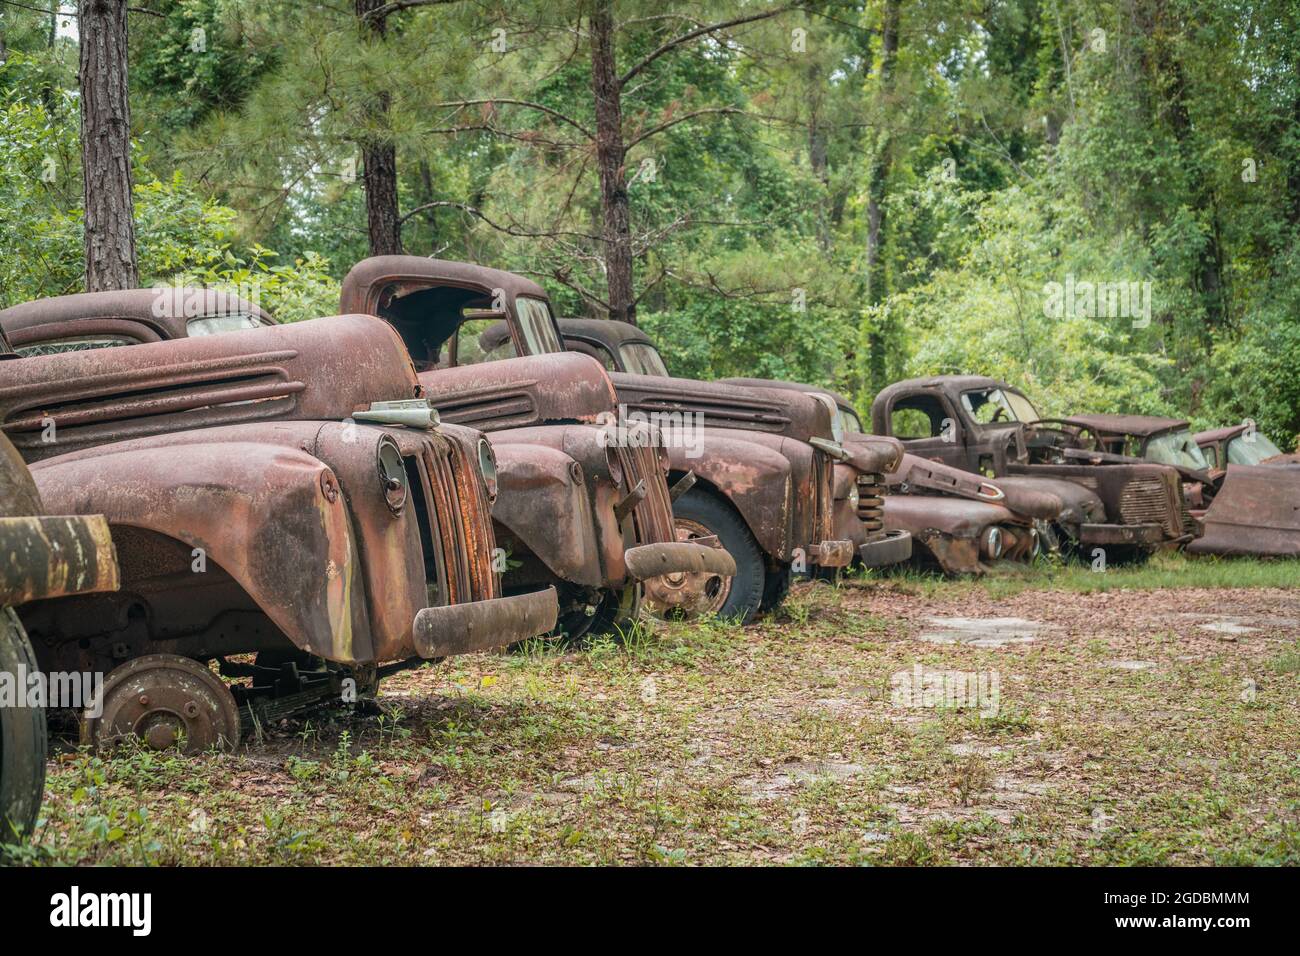 barnfind #rural #pickup #carros #abandonados #resgate #projectcarbr #